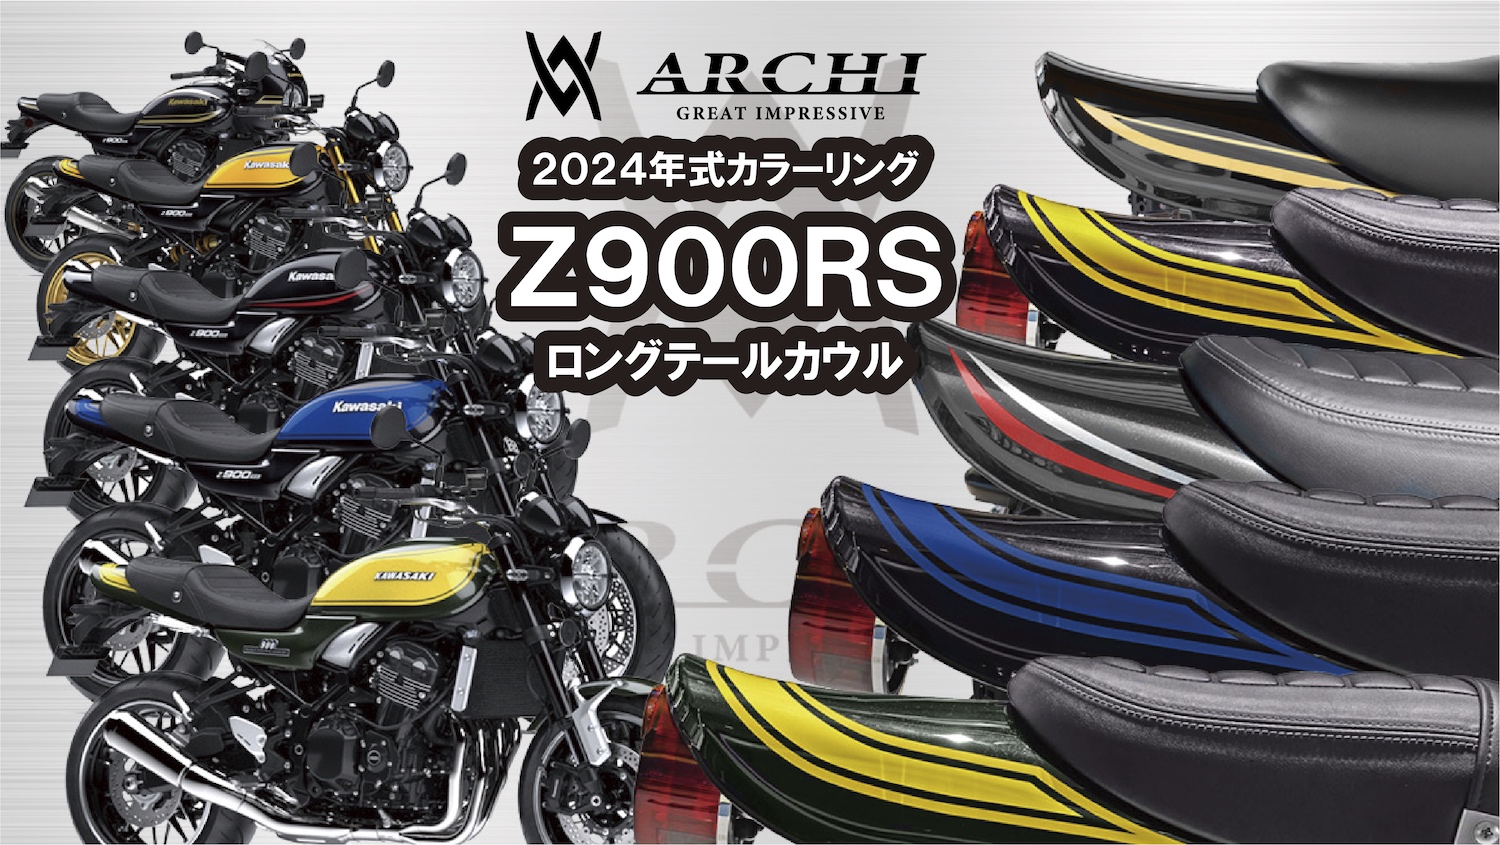 ARCHI」(アーキ) Z900RS 2024年モデル専用ロングテールカウル予約受付